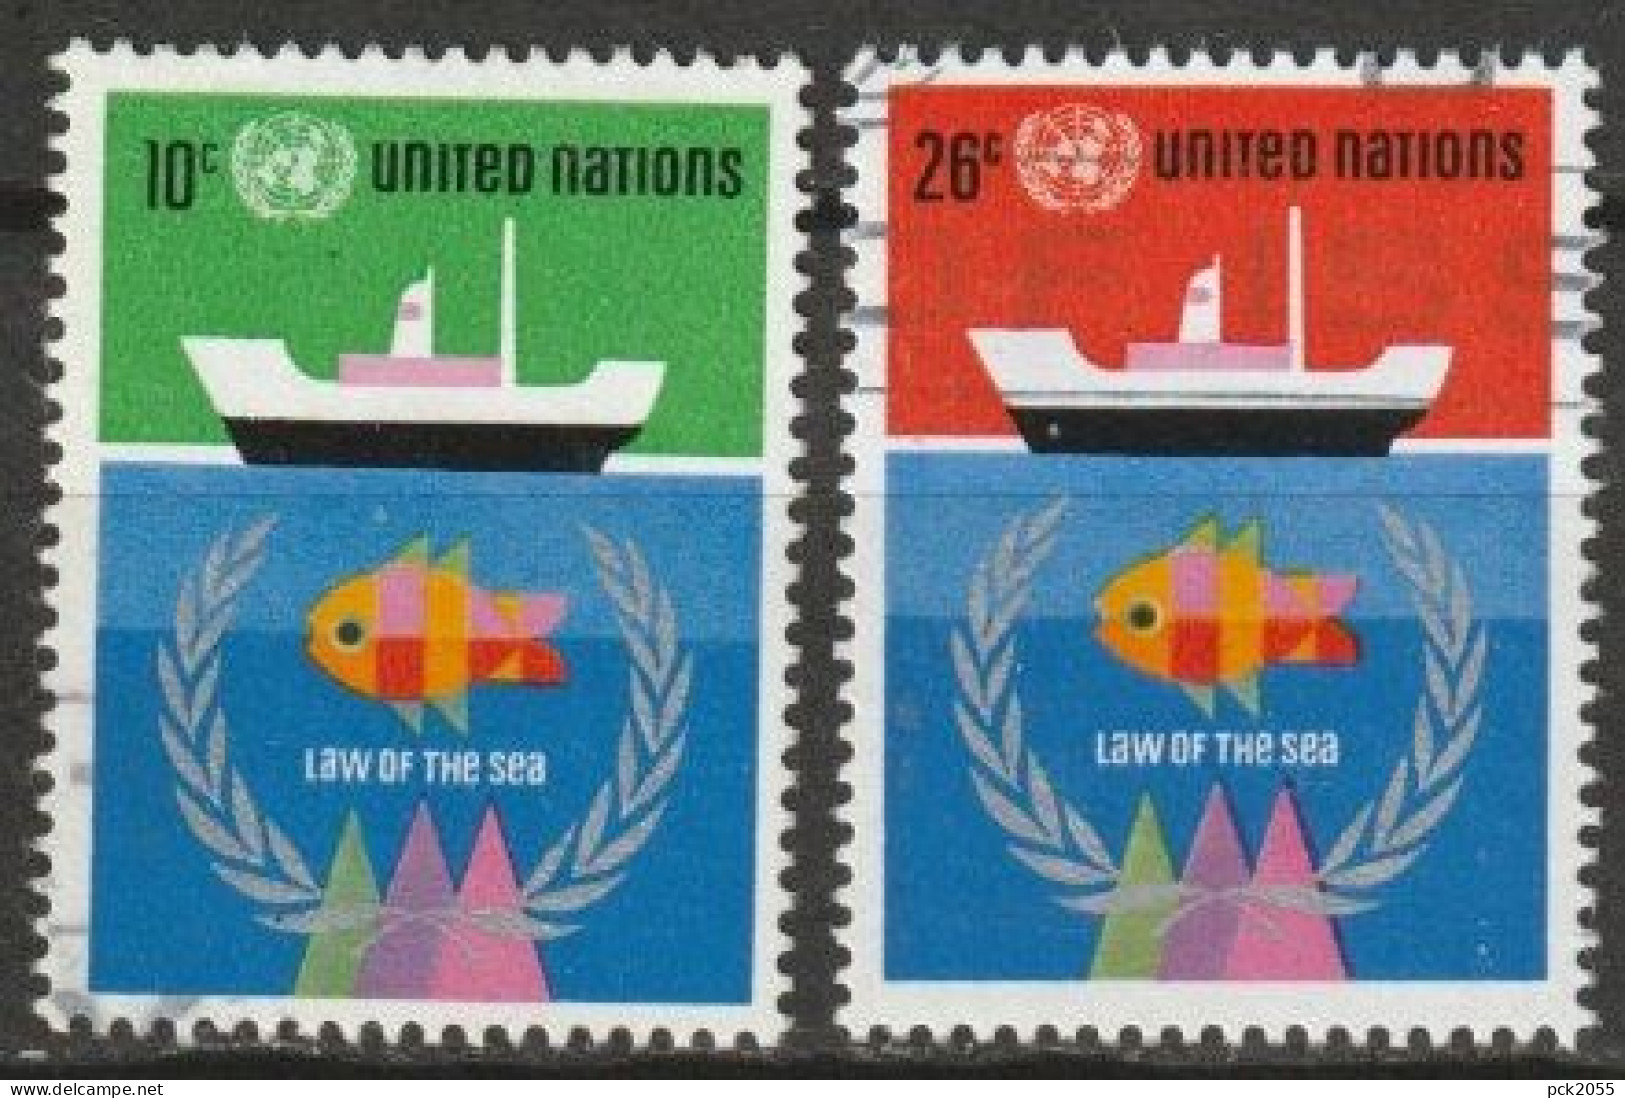 UNO New York 1974 MiNr.277 - 278 O Gestempelt Seerechtskonferenz Der UNO ( 4749 )günstige Versandkosten - Gebraucht